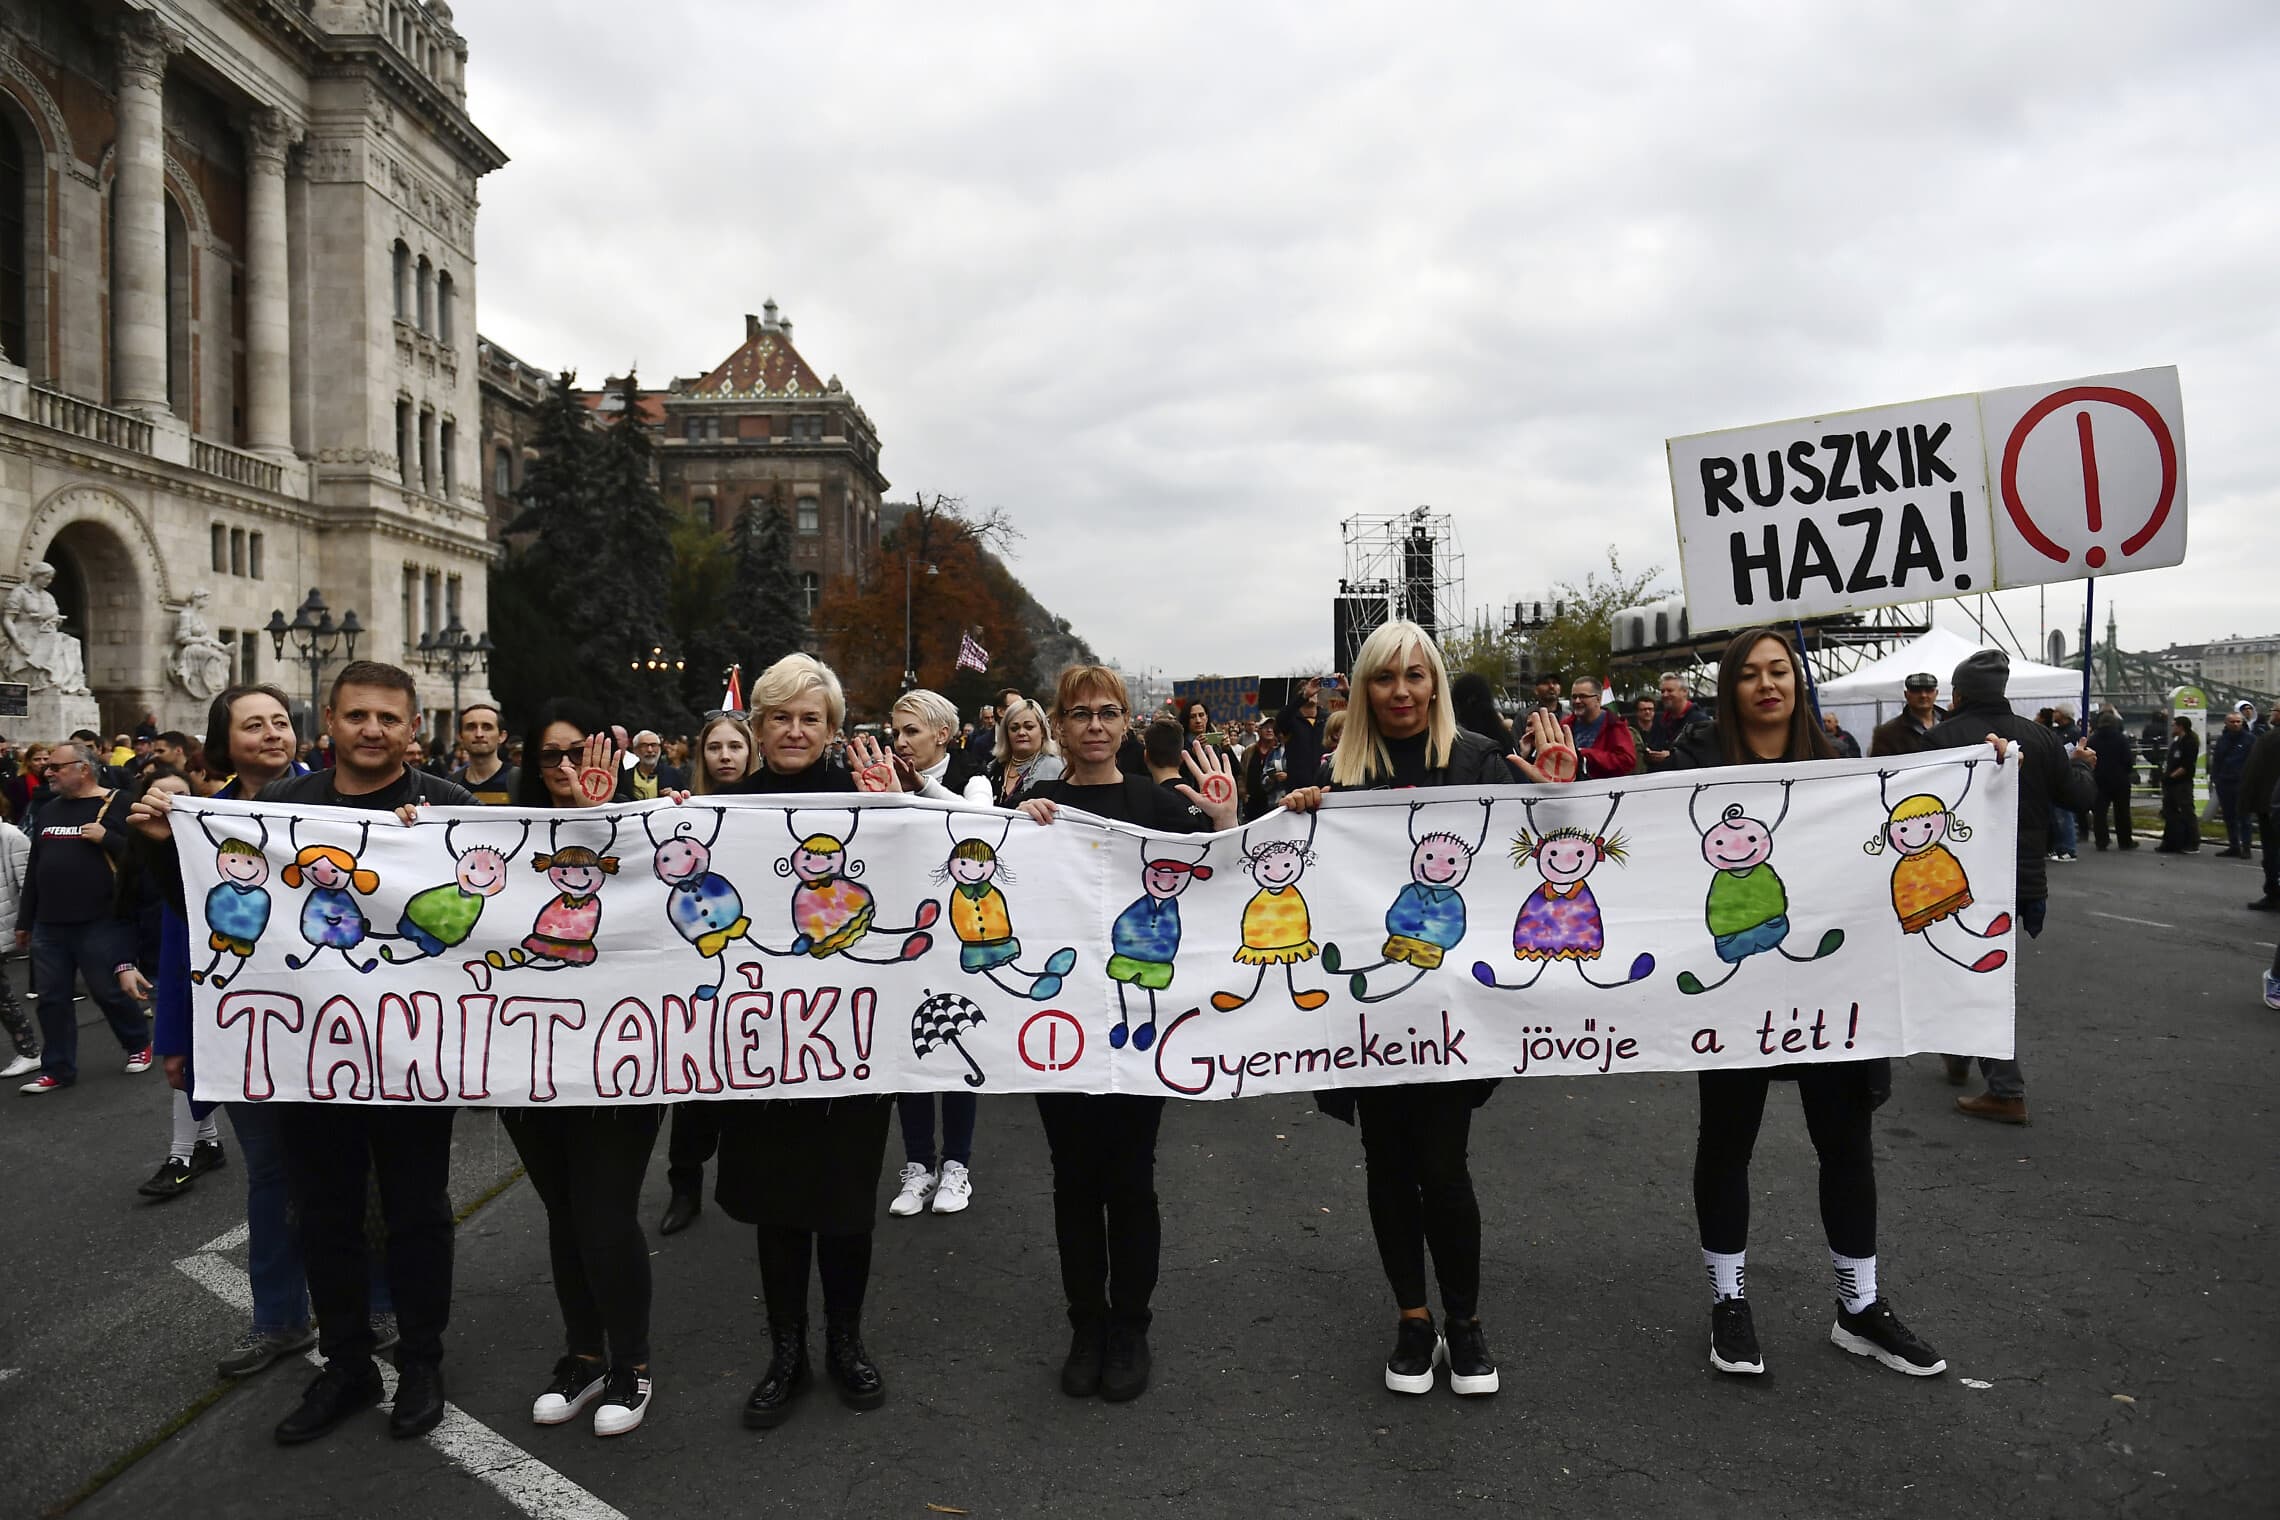 הפגנת סולידריות עם המורים בהונגריה בדרישה לשפר את תנאי העבודה שלהם, בודפשט, 23 באוקטובר 2022 (צילום: AP Photo/Anna Szilagyi)